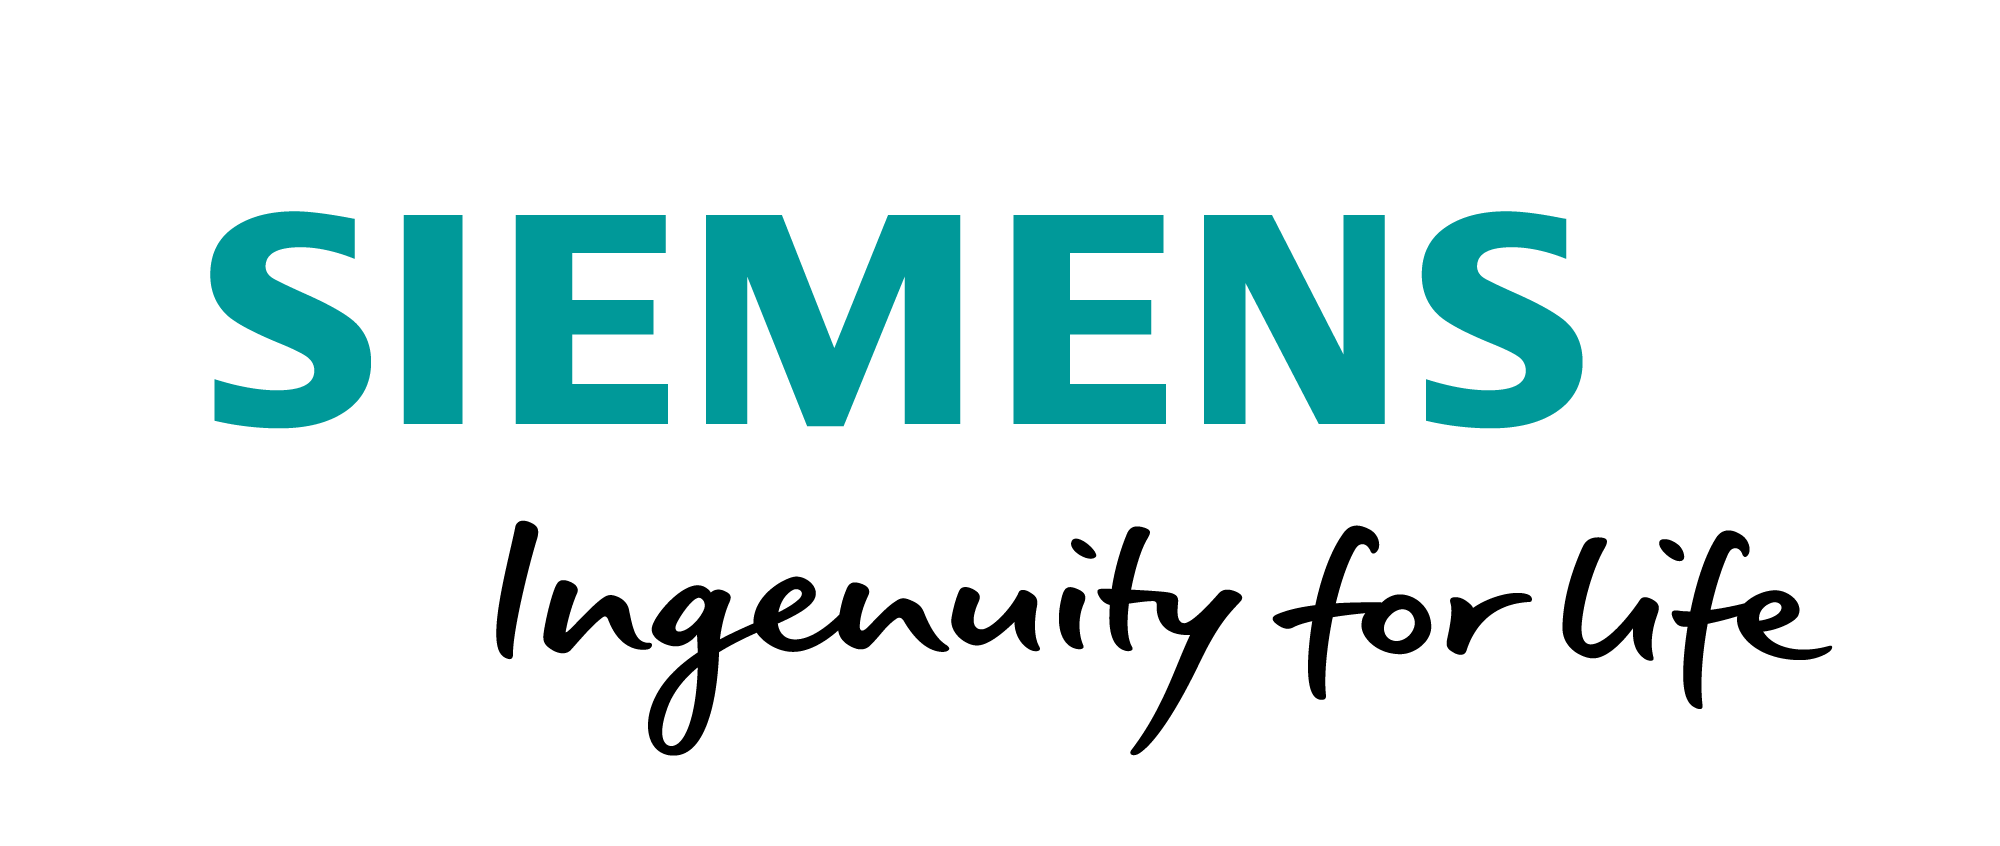 Siemens AG Logo